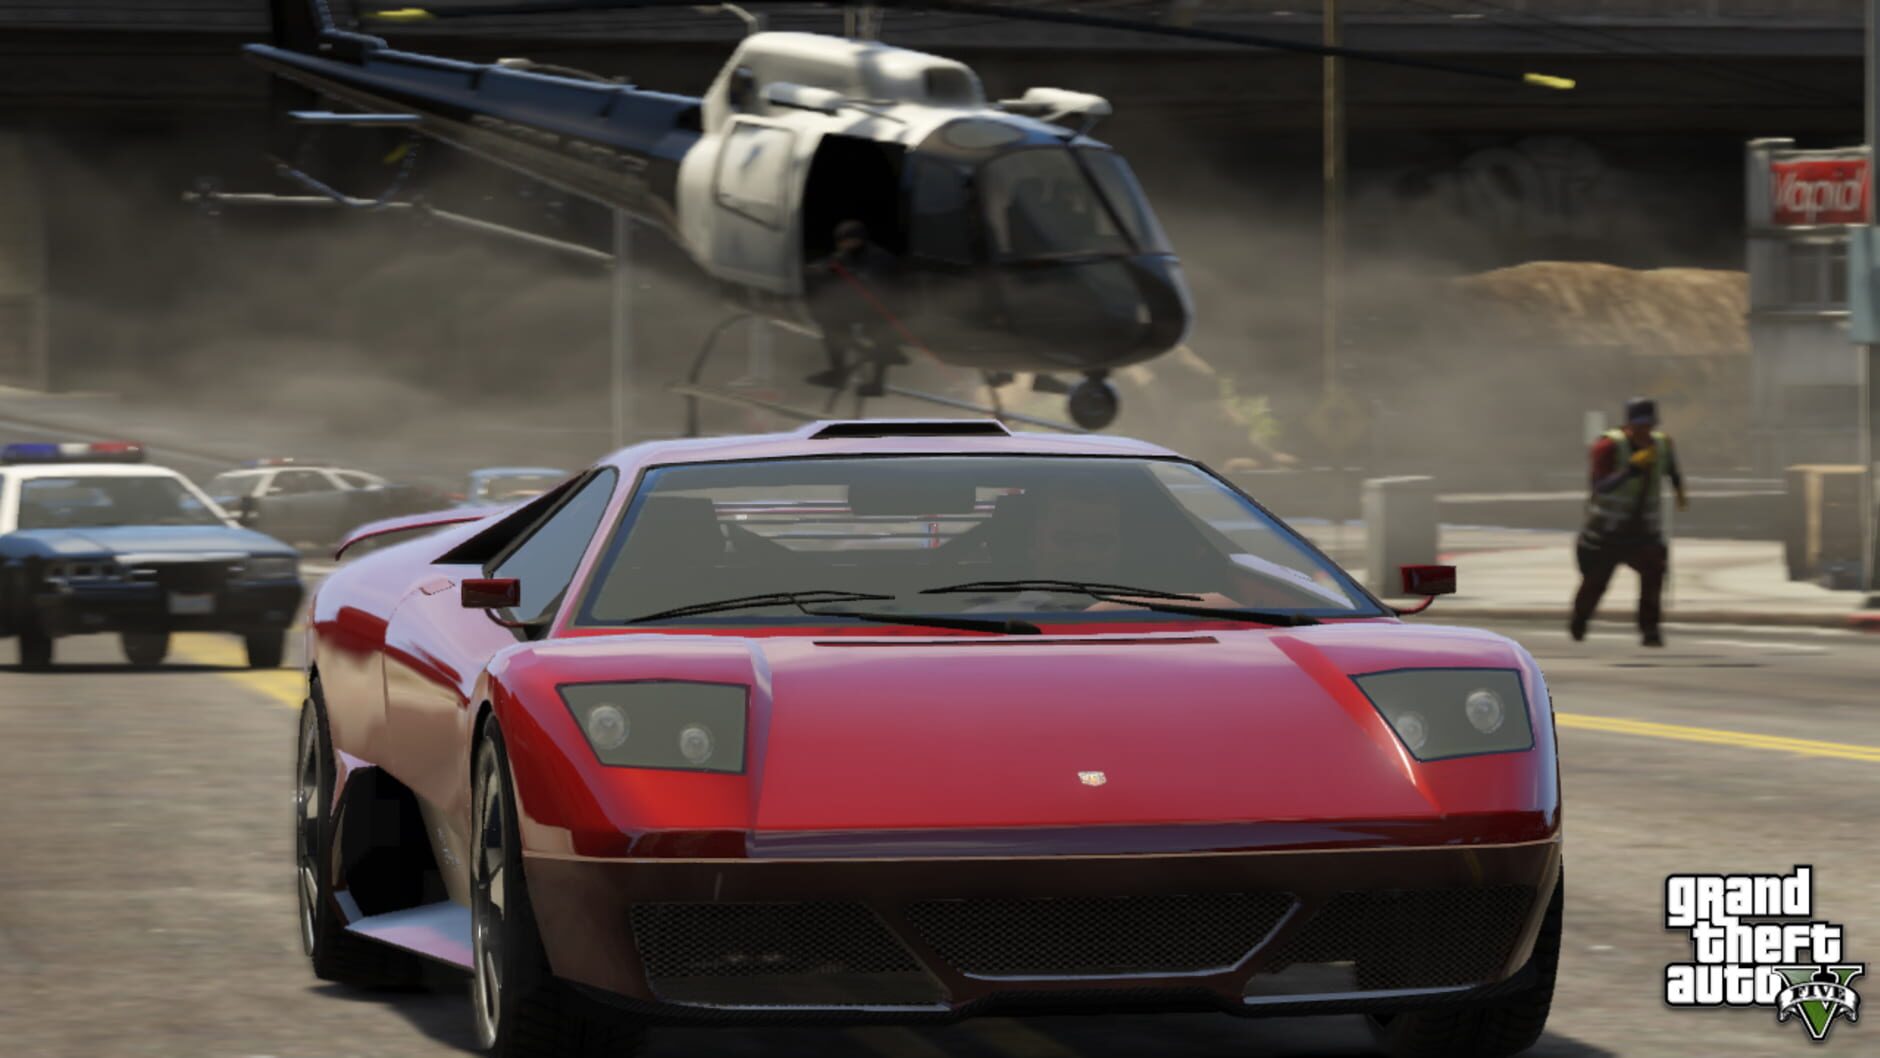 Screenshot for Grand Theft Auto V